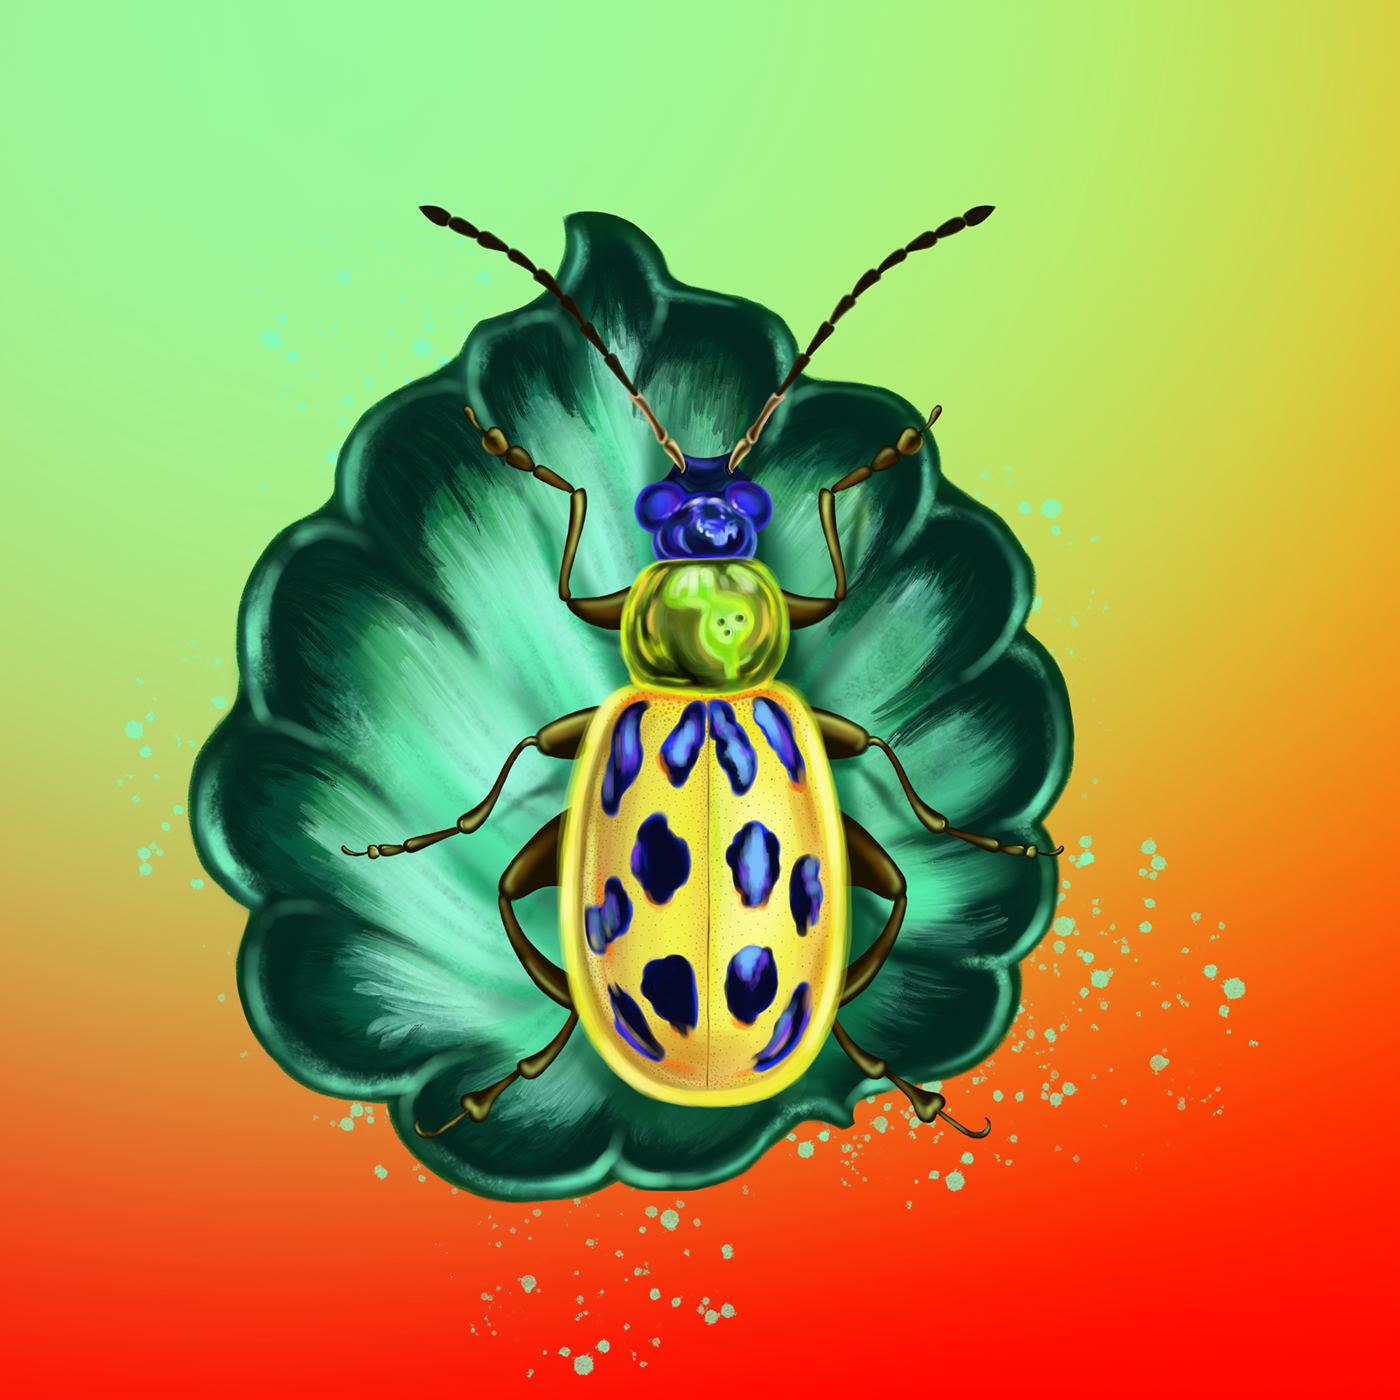 #holographic #bug #botanicalart #botanical #leaf #illustration #botanicalillustration